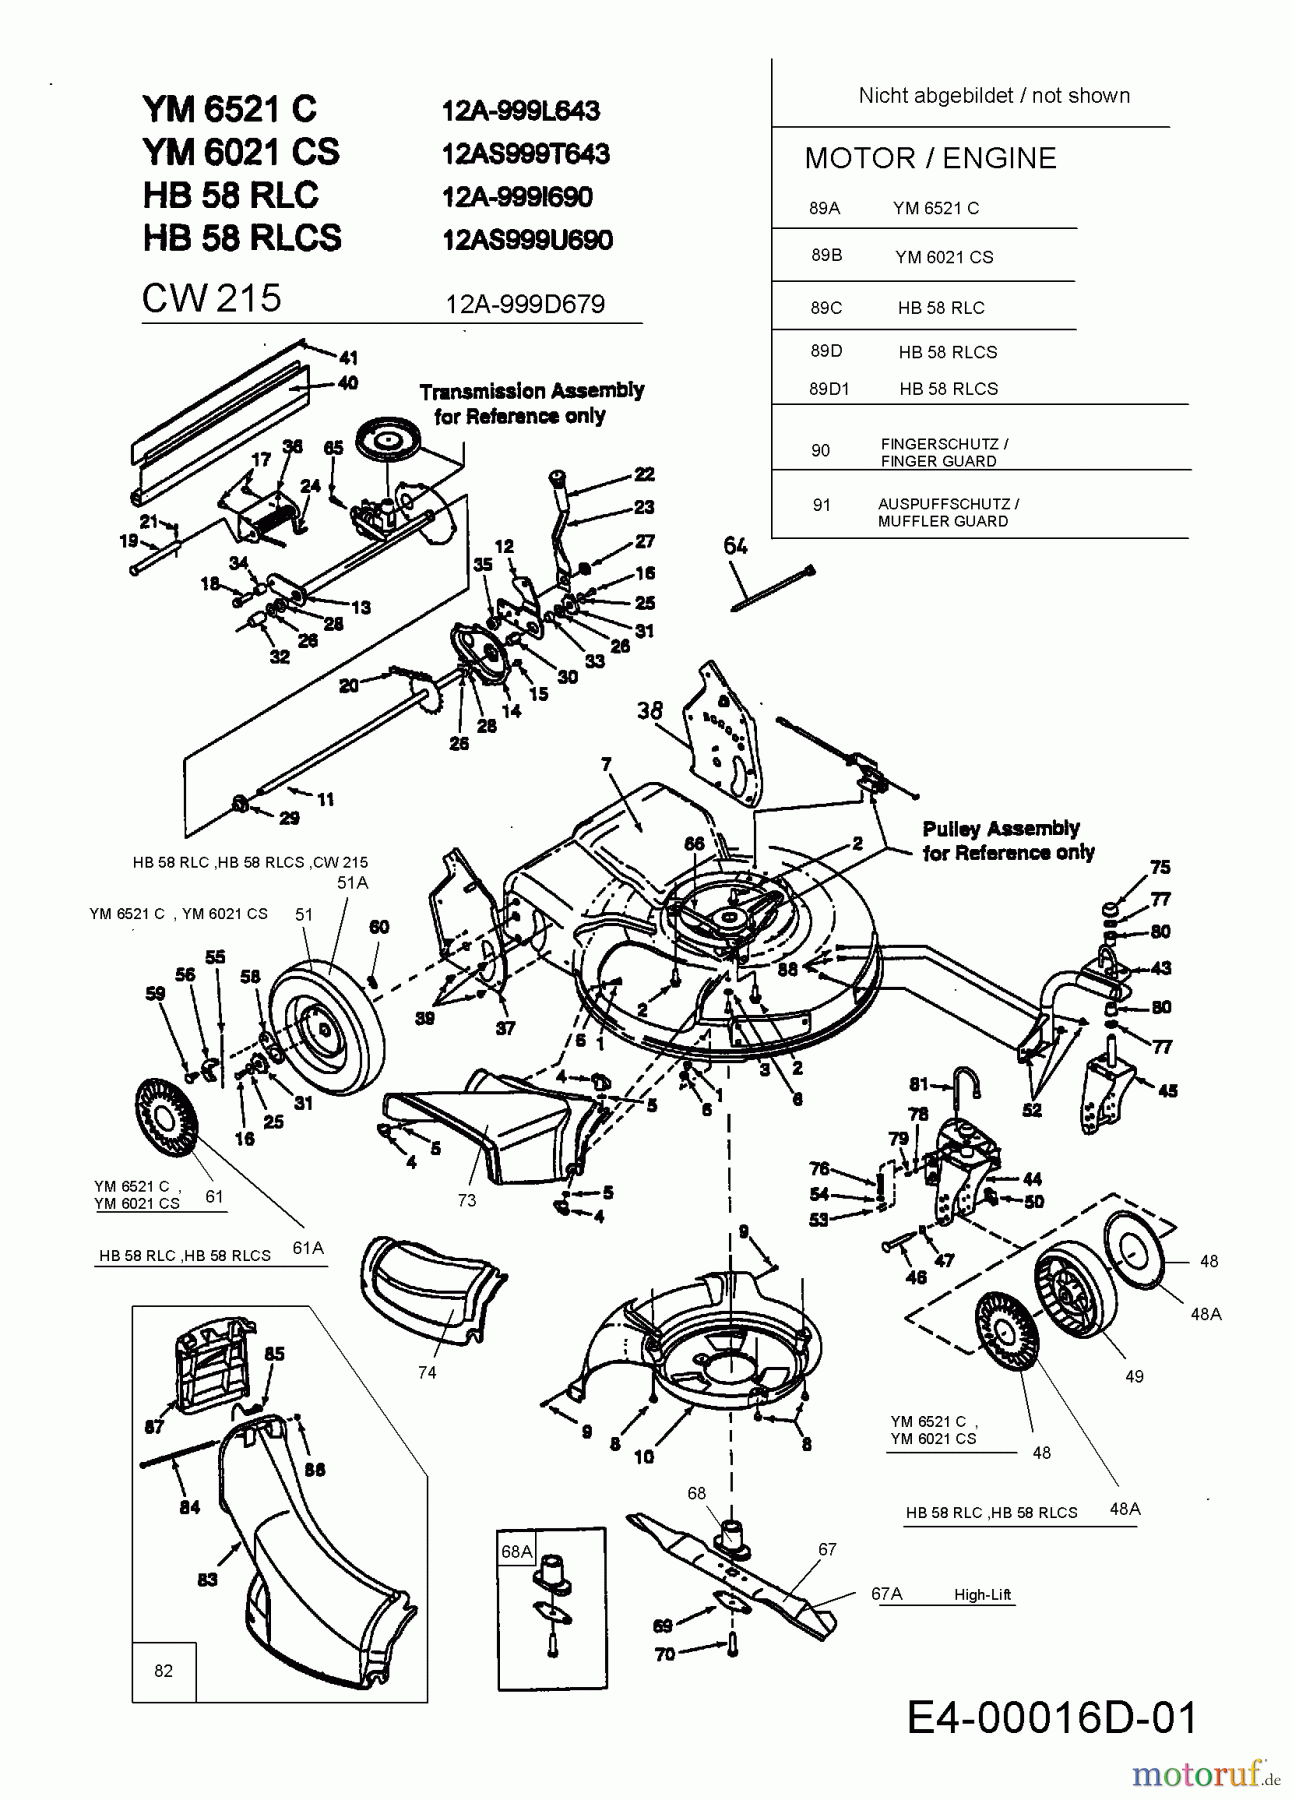  Yard-Man Motormäher mit Antrieb YM 6021 CS 12A-999T643  (2001) Getriebe, Messer, Schnitthöhenverstellung, Räder